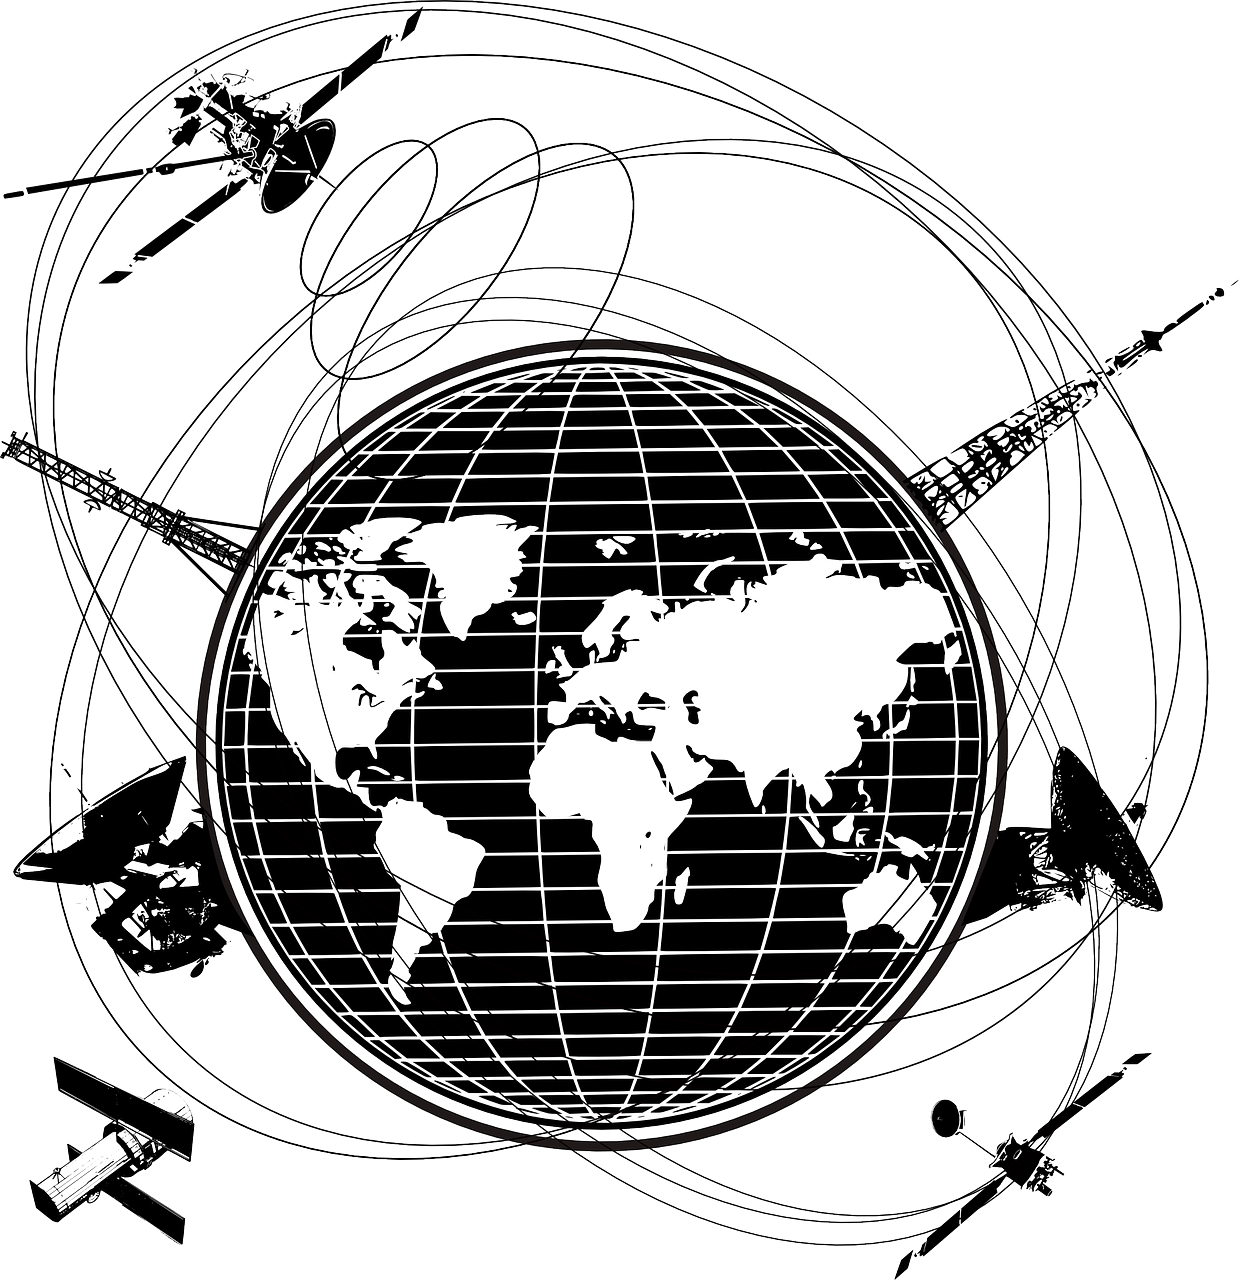 Palydovai, Erdvė, Orbita, Orbita, Telekomunikacijos, Visuotinis, Komunikacija, Transmisija, Transliuoti, Radaras